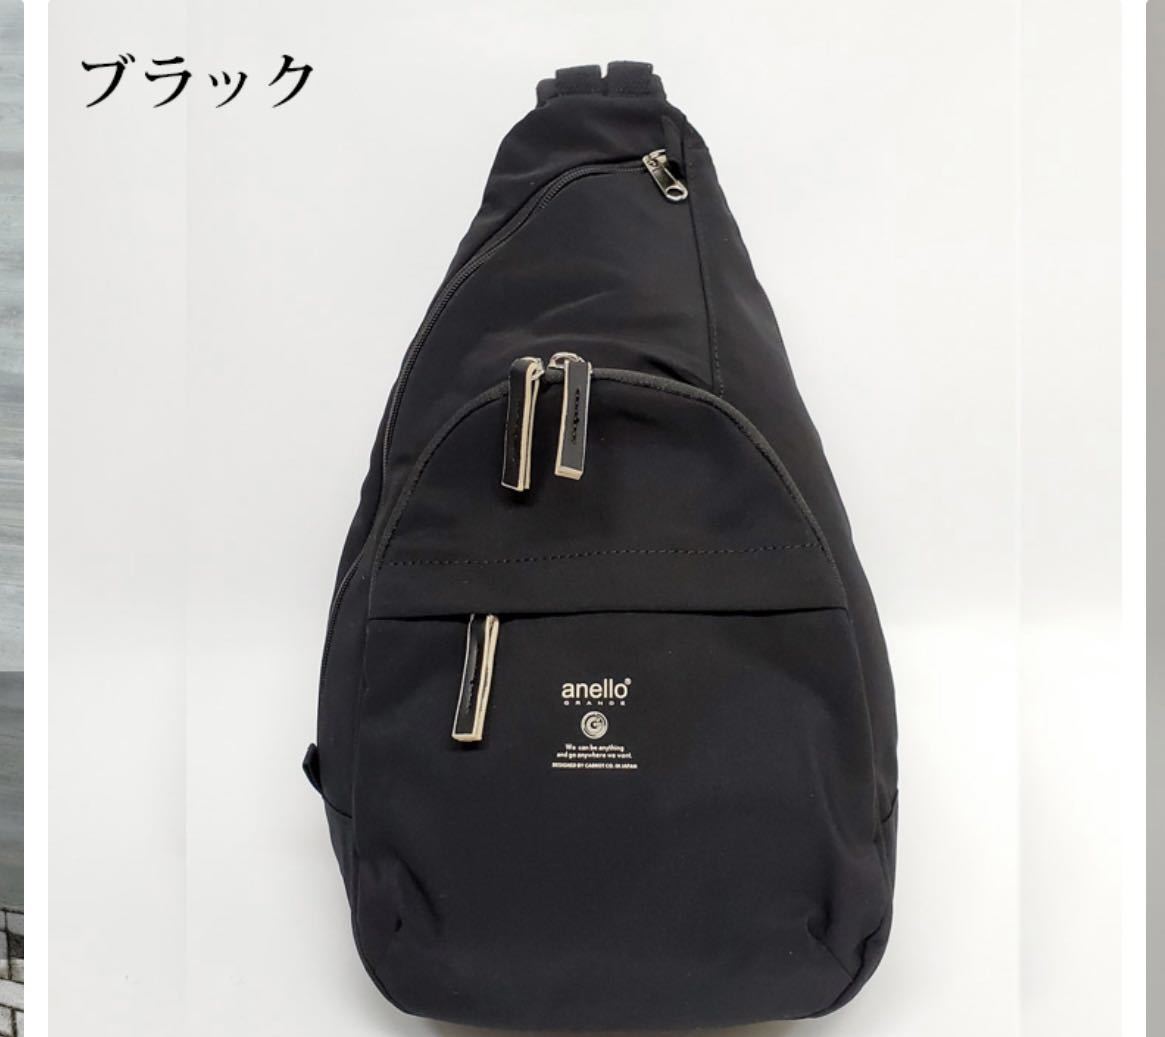 a Nero grande body bag bag one shoulder 6 pocket left right na ska n travel line comfort .... shopping 